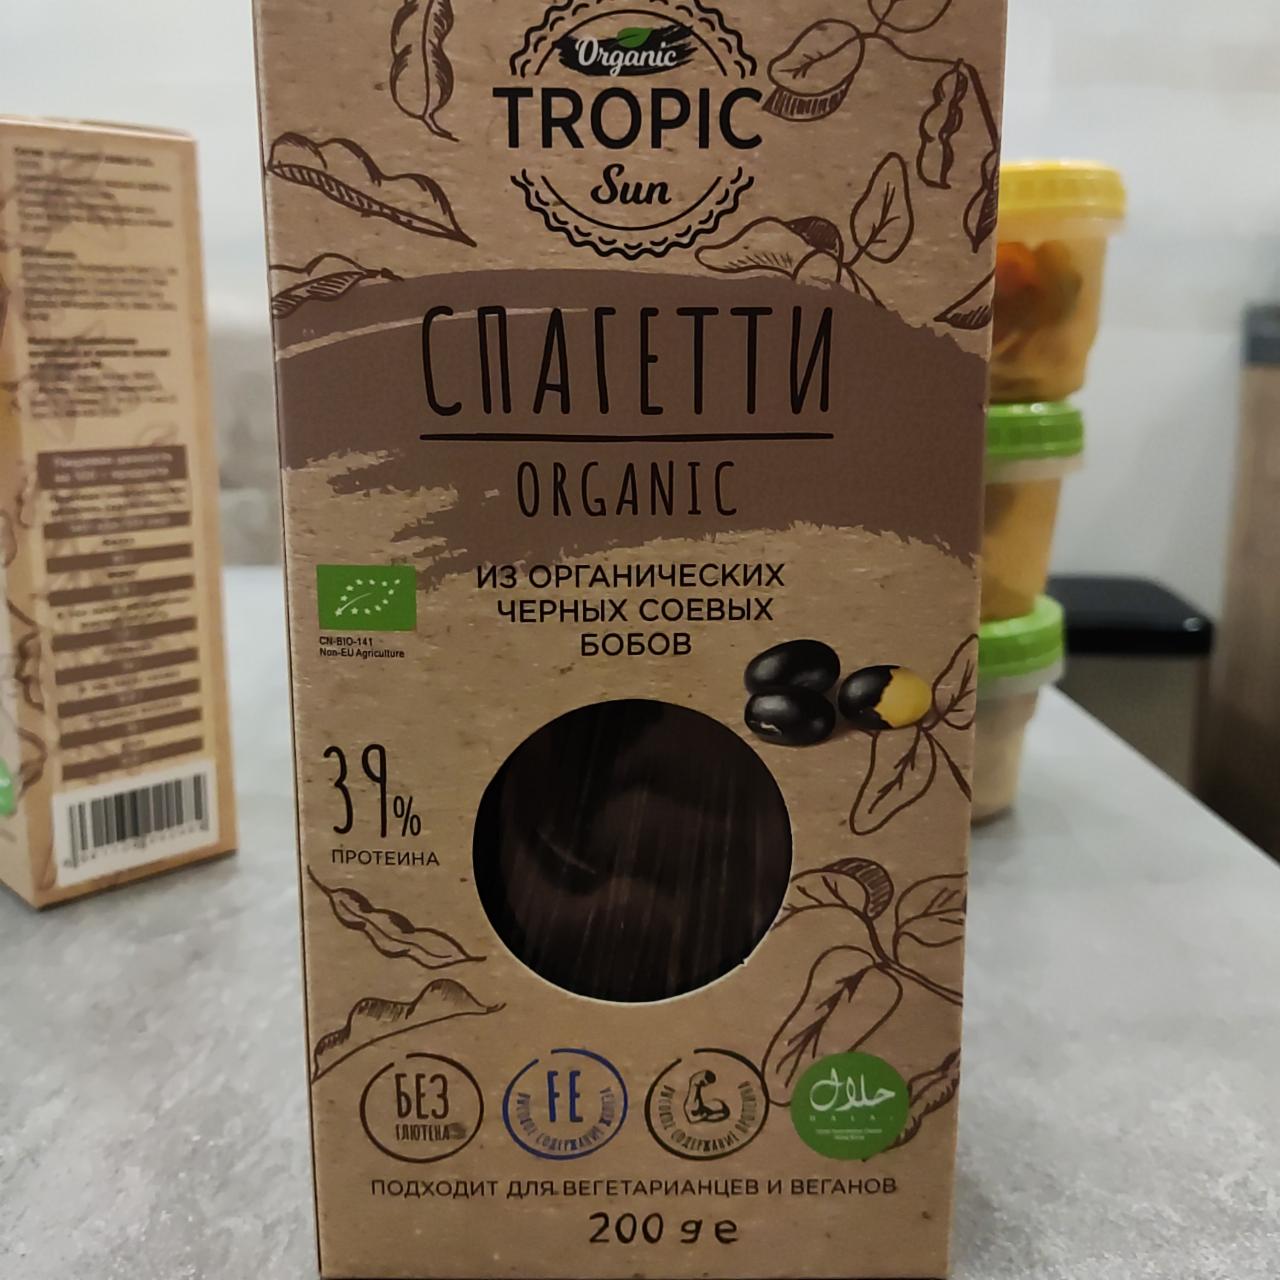 Фото - Спаггети из органических соевых чёрных бобов Organic tropic